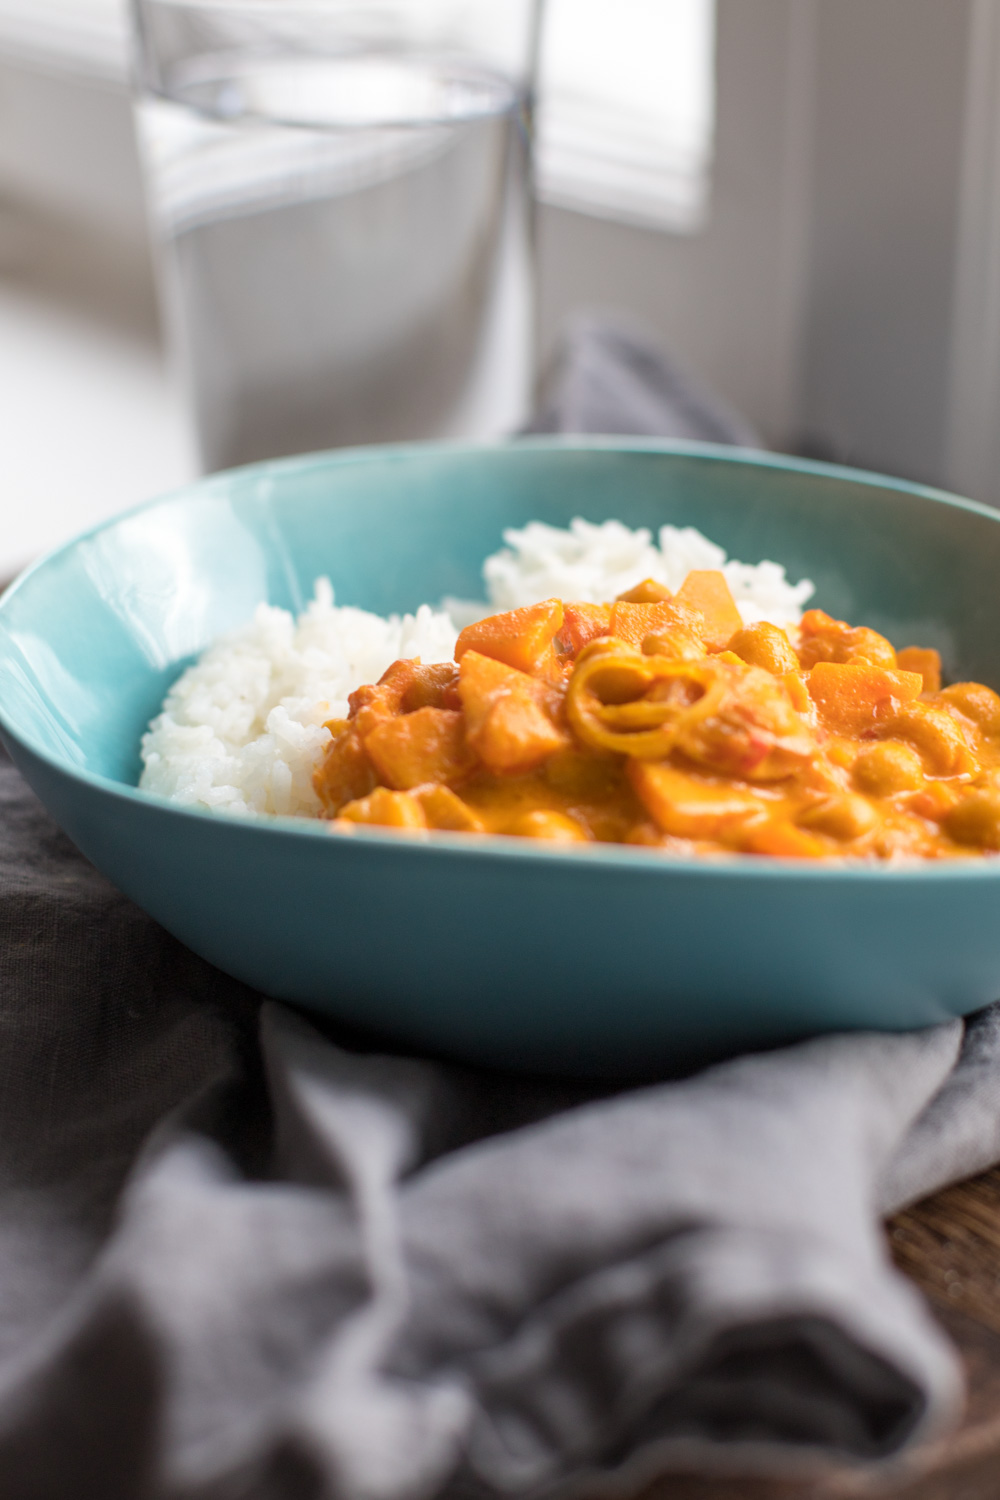 Mittag ist fertig - das Rezept für ein schnelles veganes Kichererbsen Curry mit Kokosmilch findet Ihr jetzt auf dem Blog! 